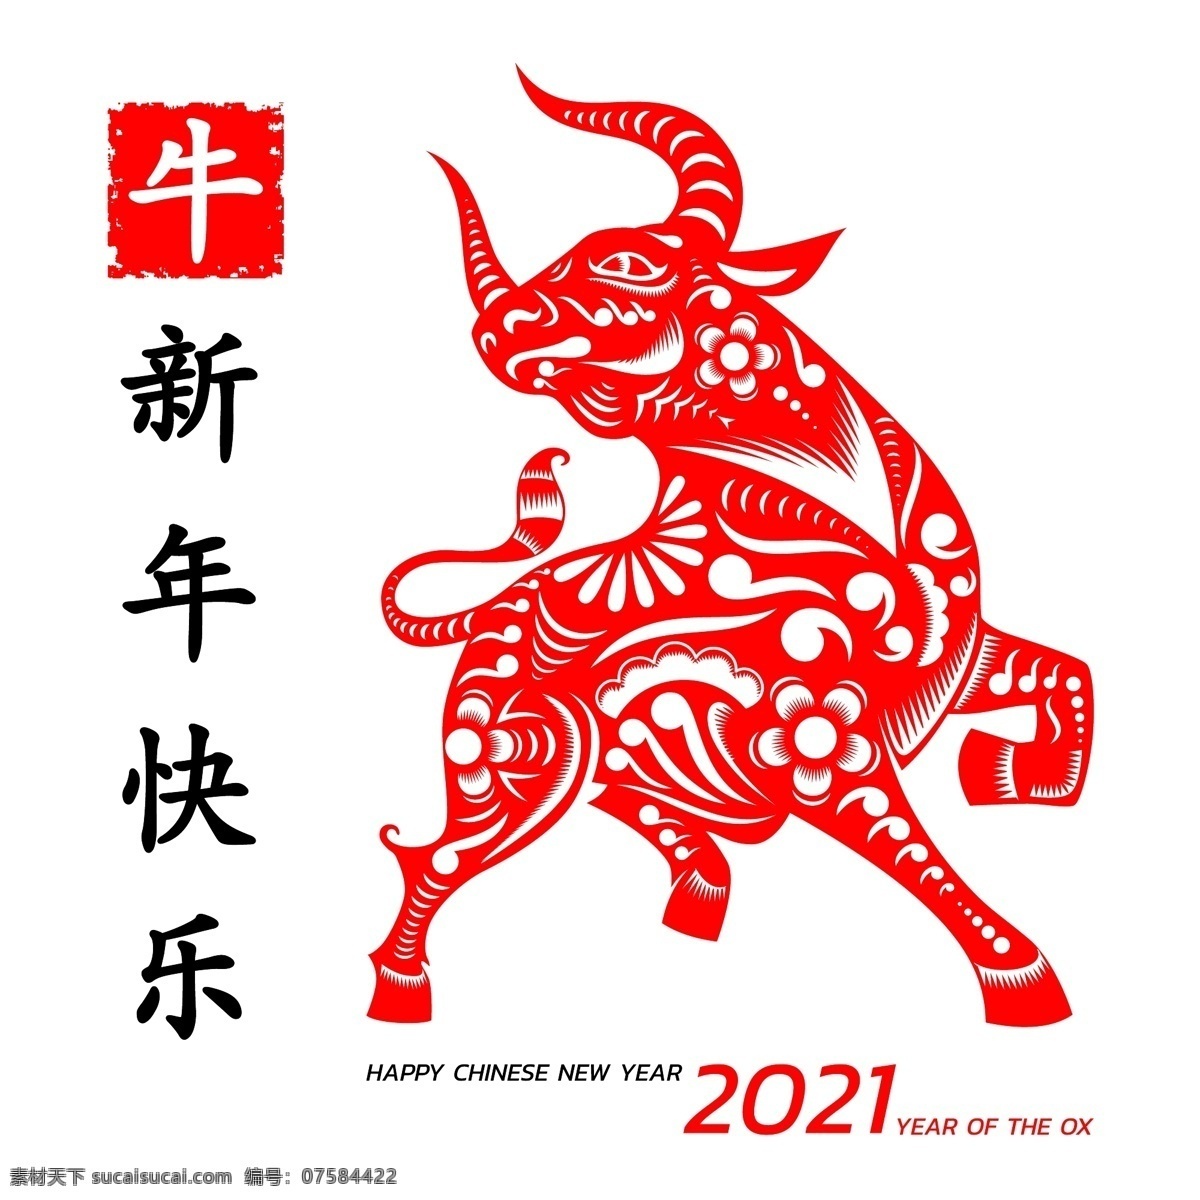 2021 牛年 背景图片 2021牛年 背景 牛年背景 年 2021年 背景设计 共享设计矢量 文化艺术 节日庆祝